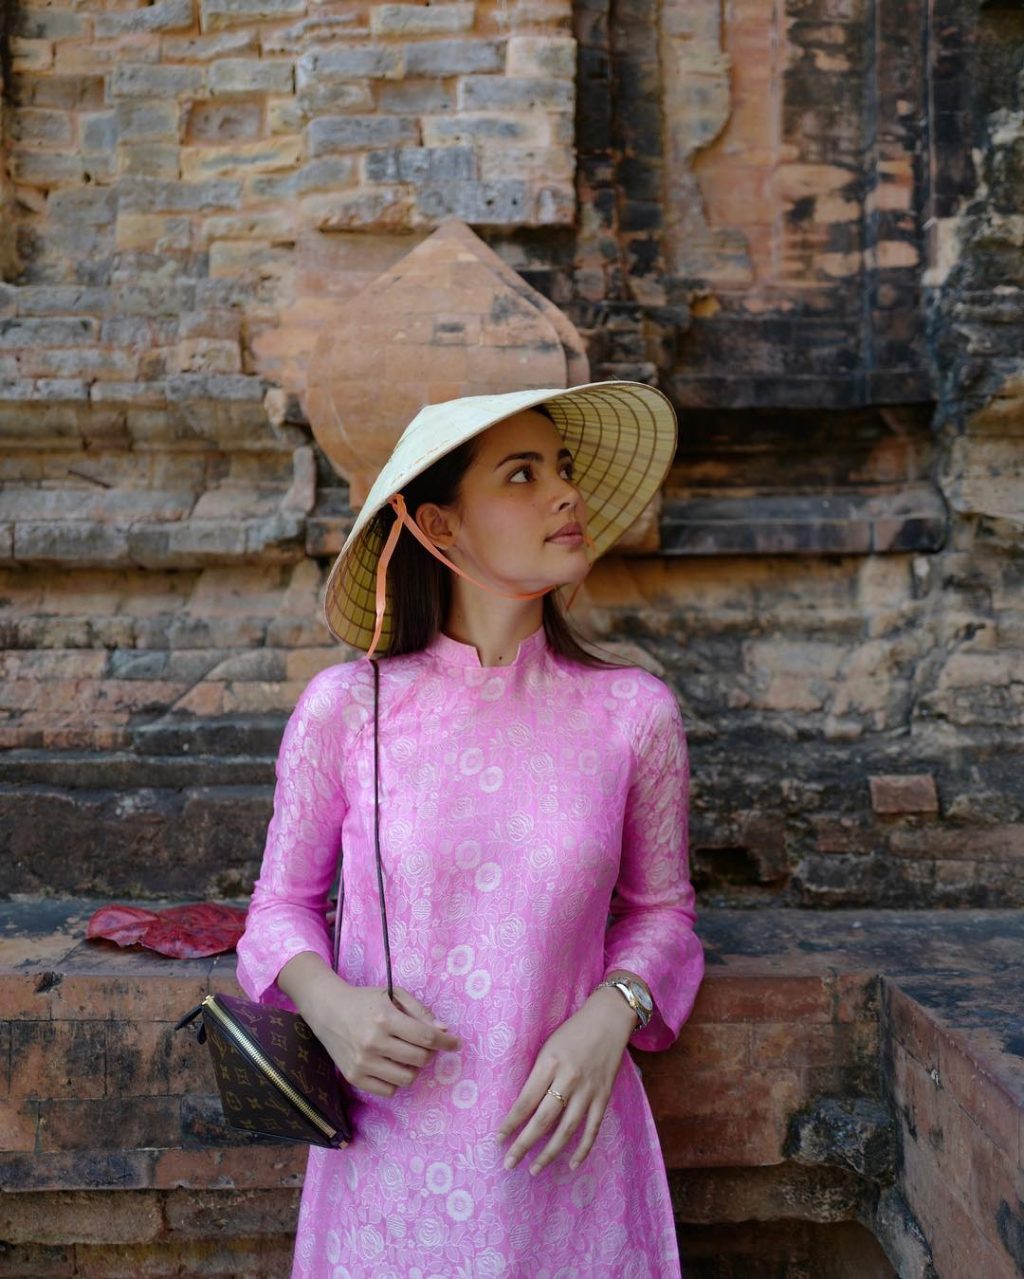 Diễn viên Urassaya Sperbund đội nón lá và diện áo dài Việt Nam màu hồng, cầm túi Louis Vuitton